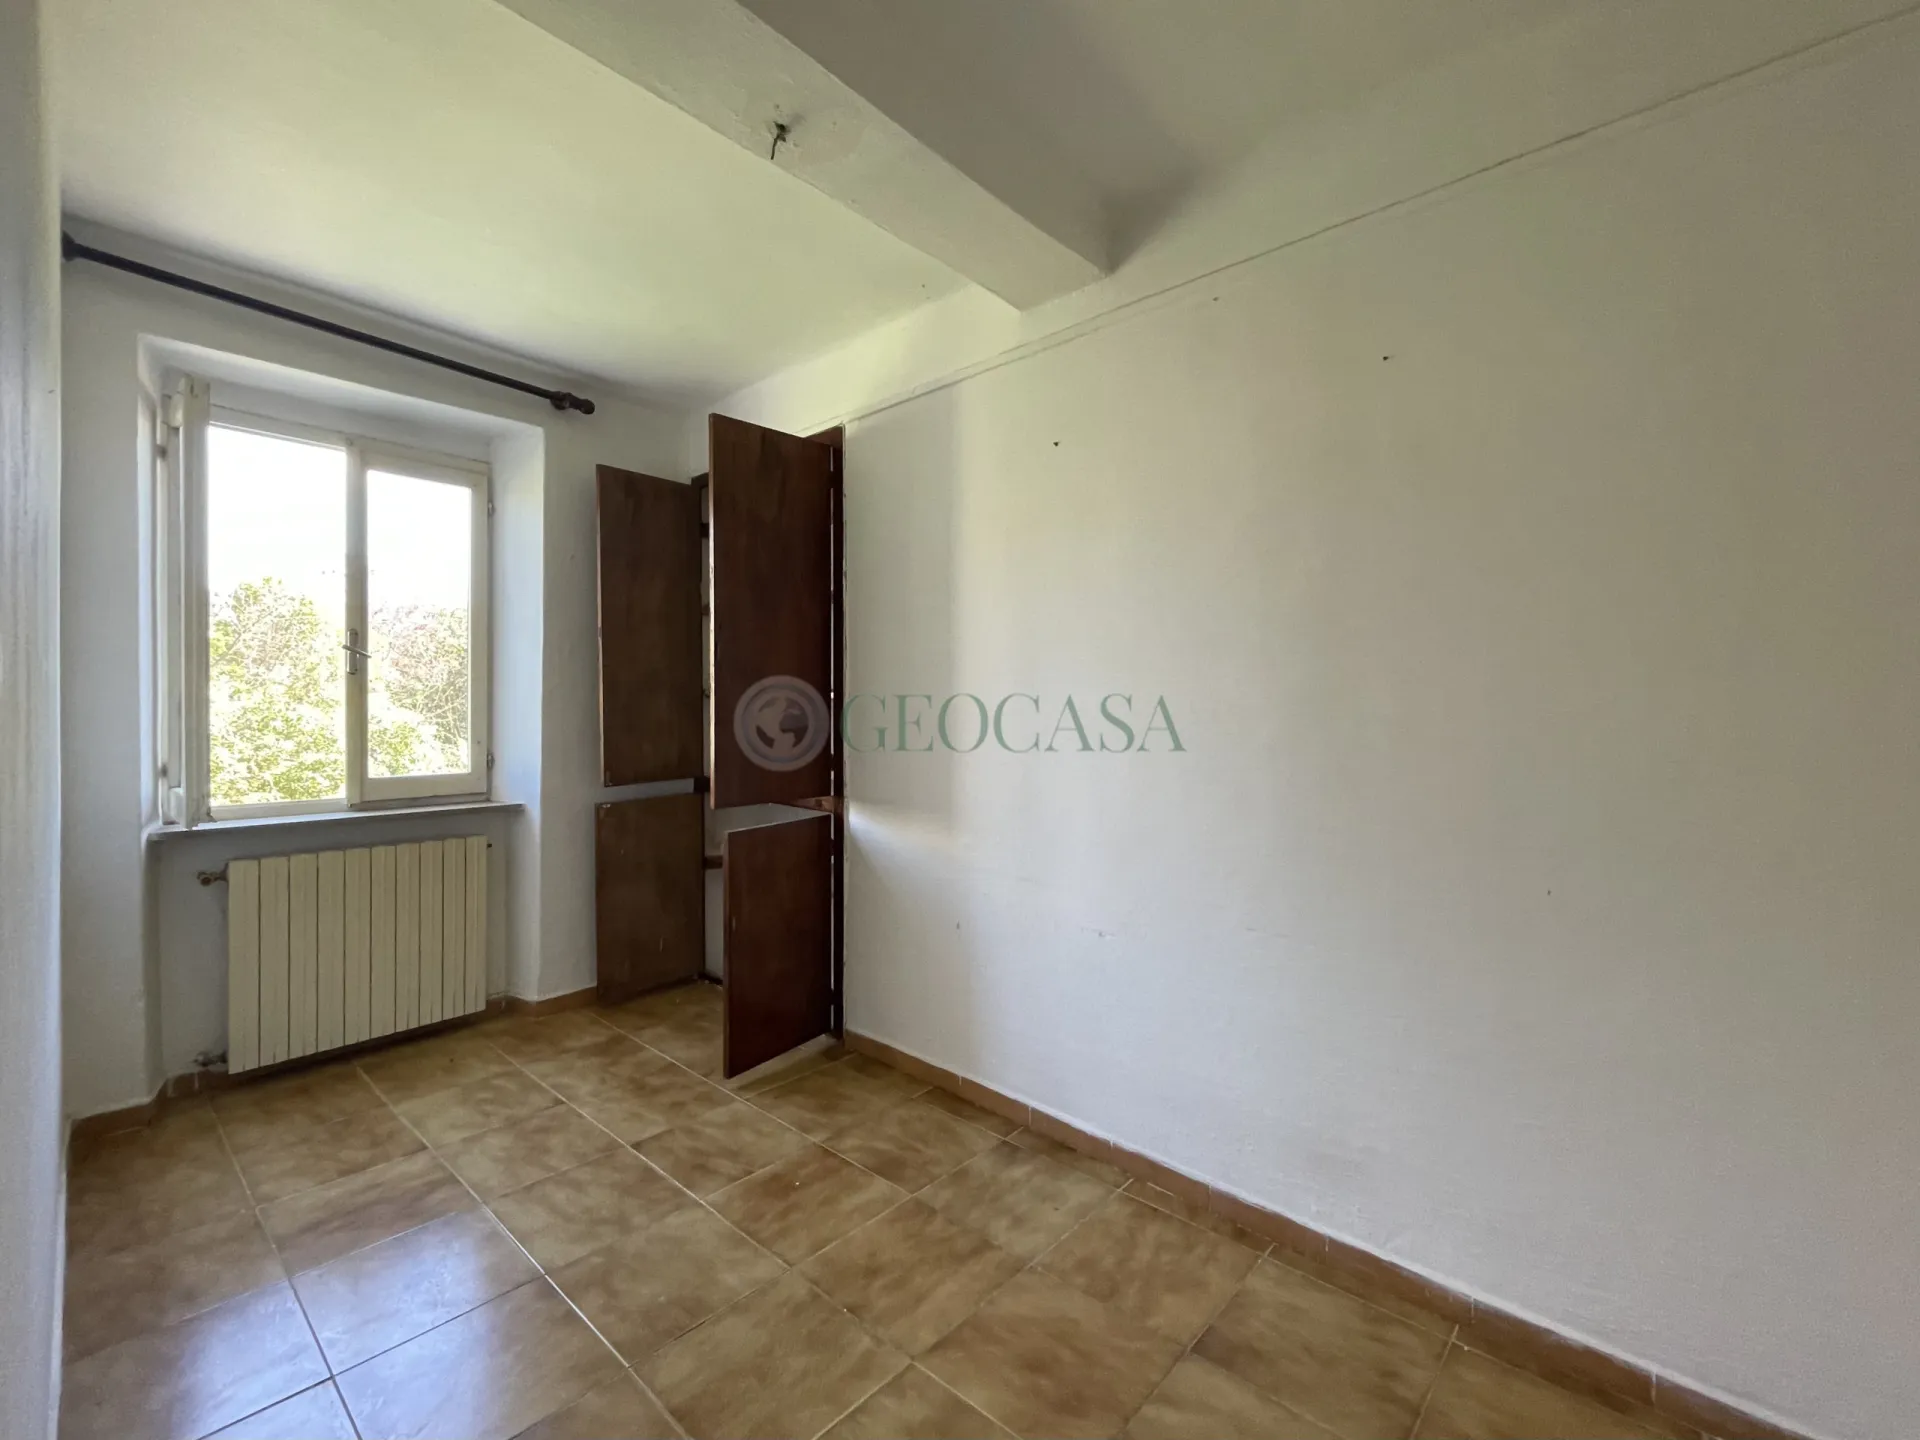 Immagine per Quadrilocale in vendita a Sarzana via Cisa Traversa I 4C